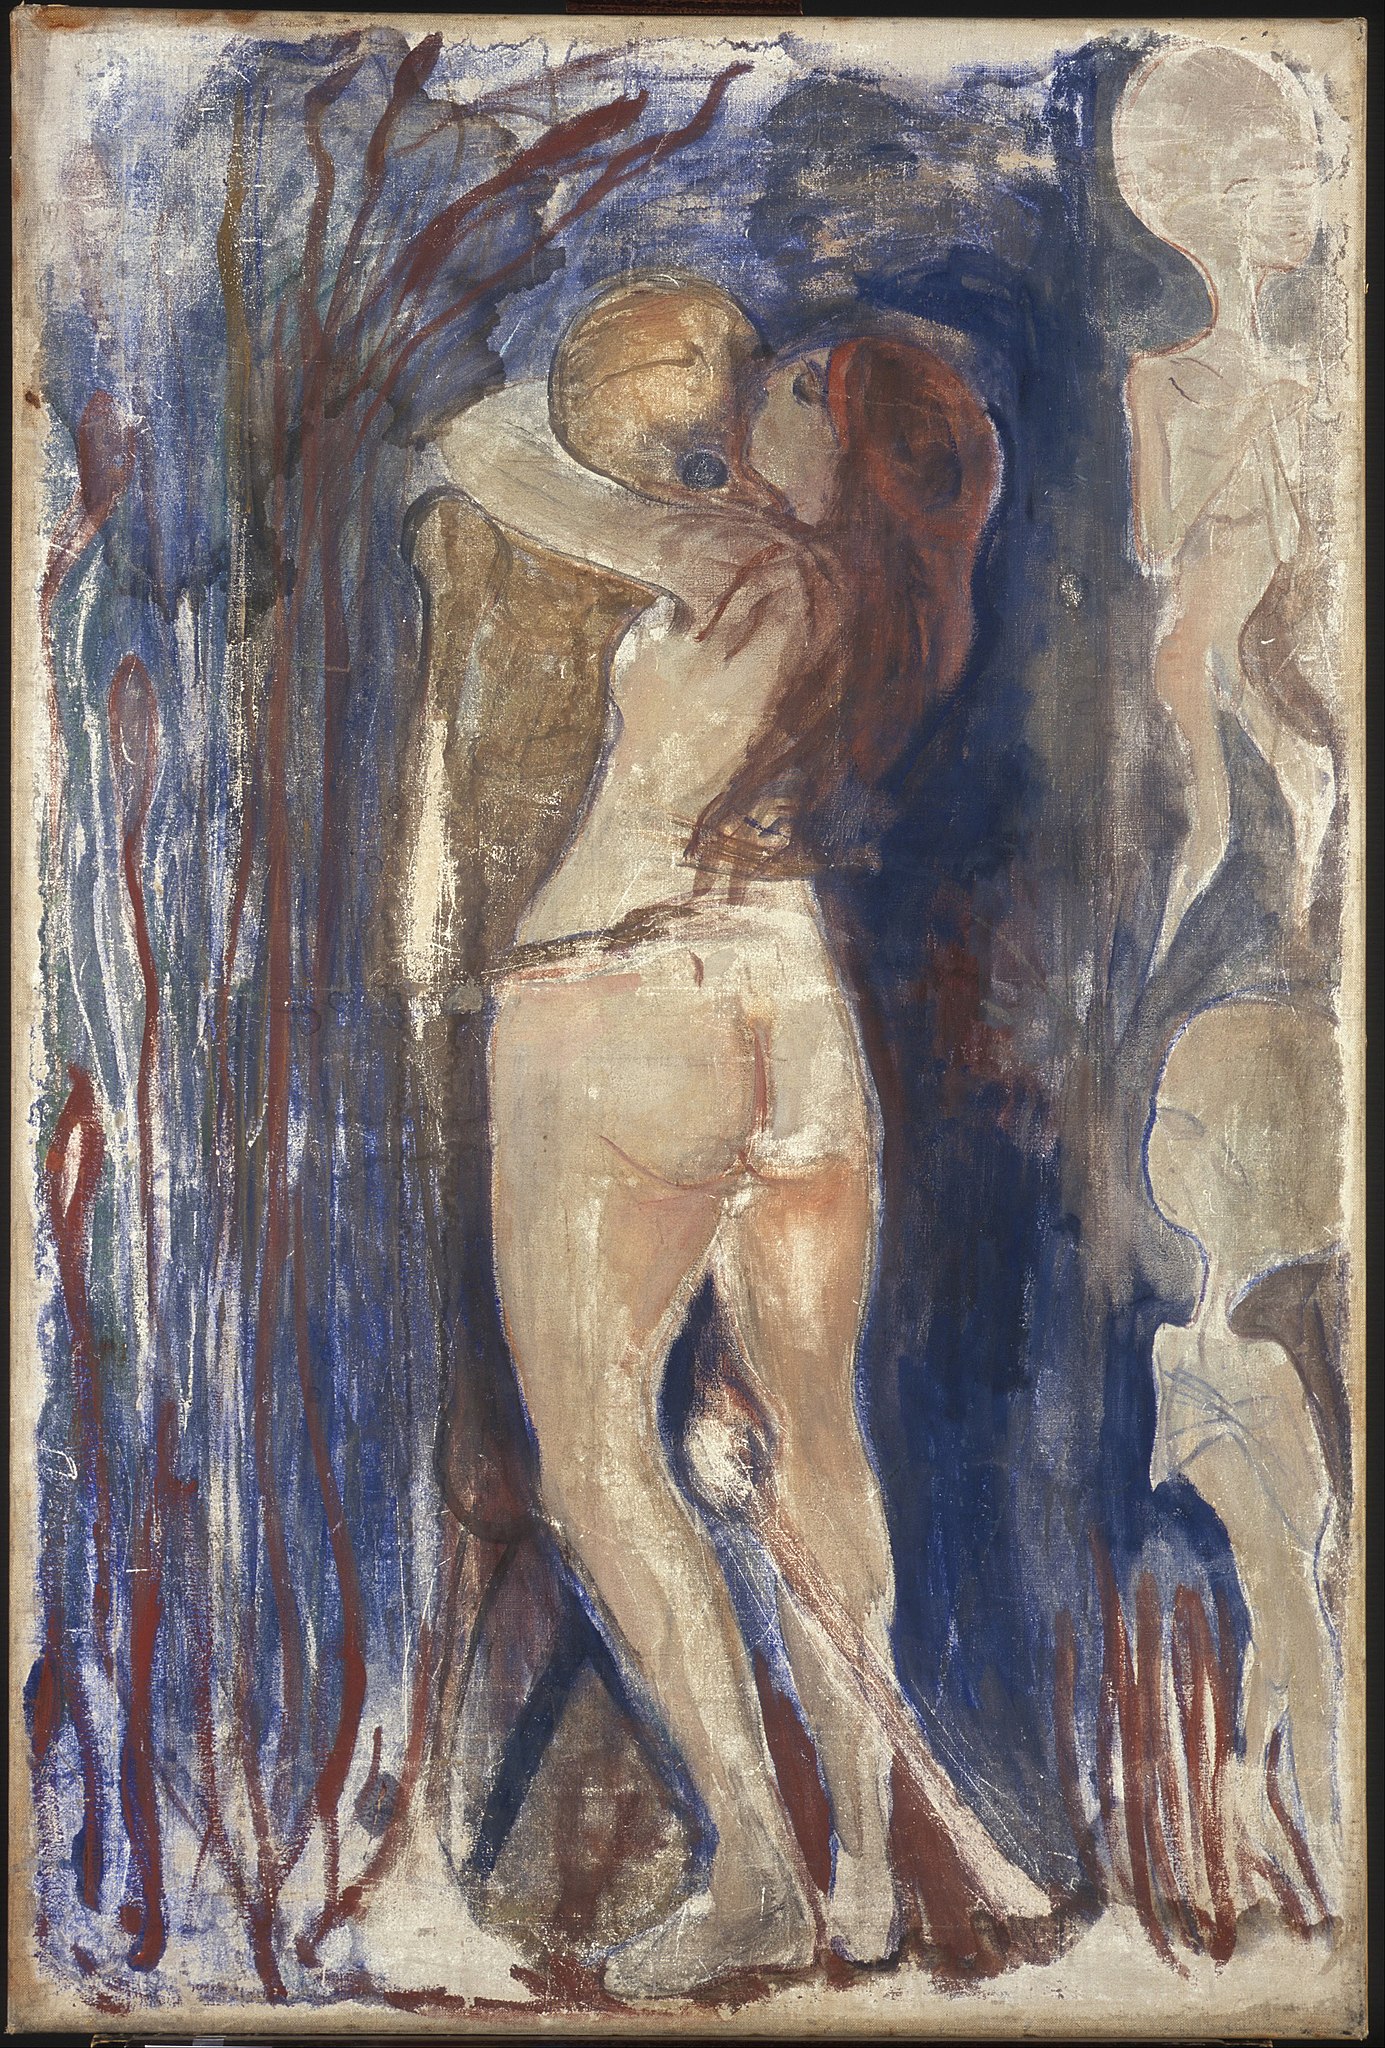 Morte e Vida by Edvard Munch - 1894 - 86 x 128 cm 